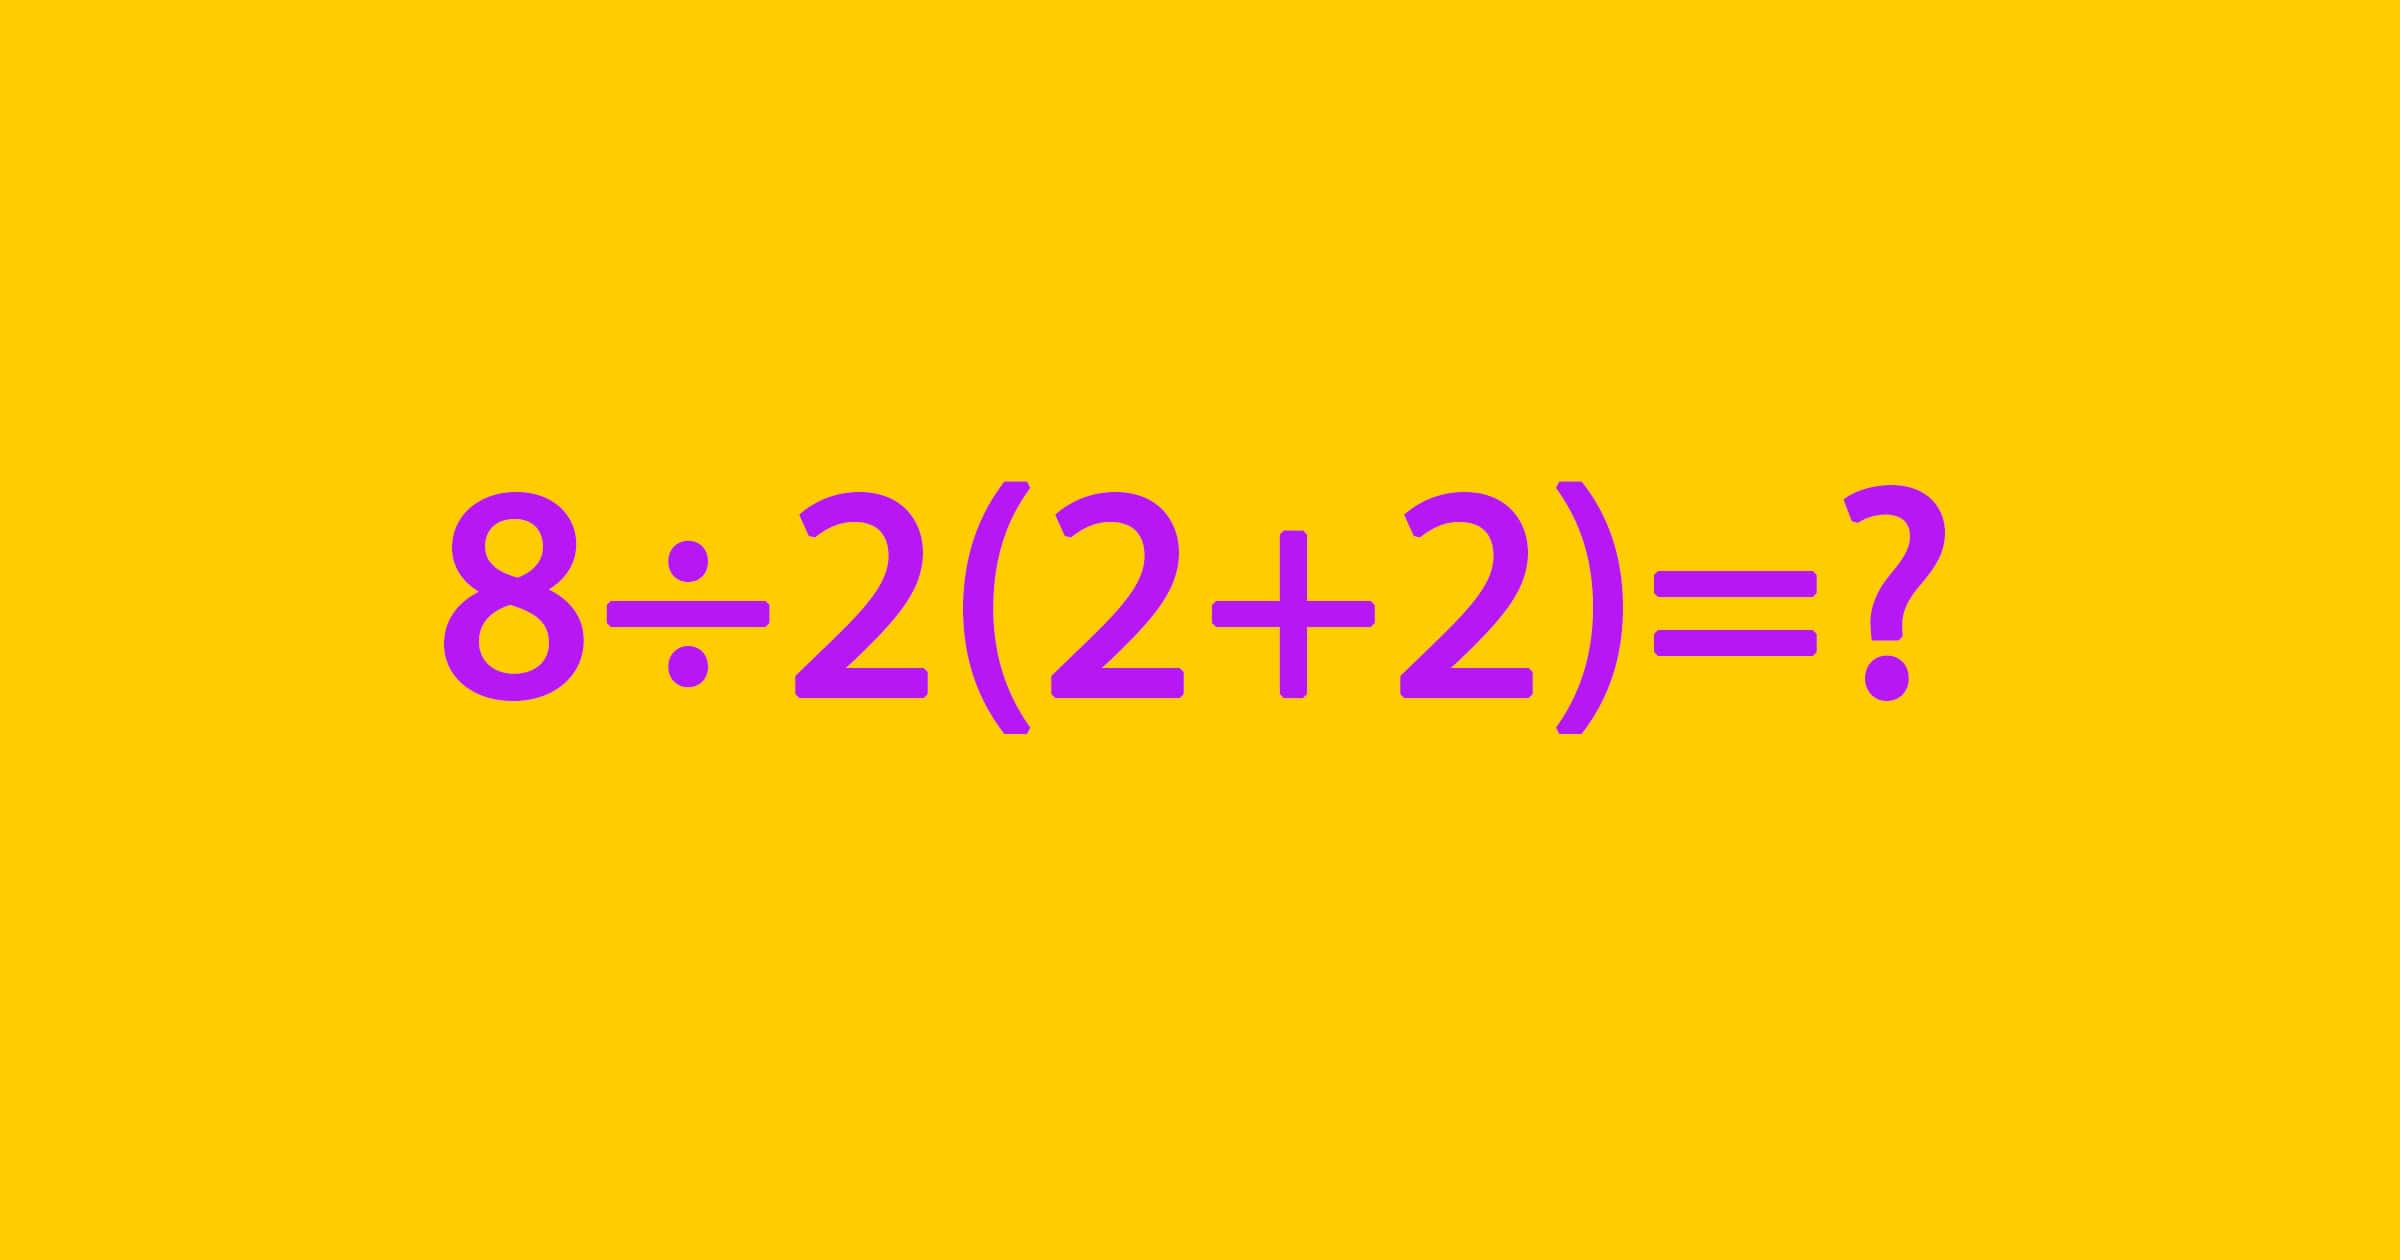 L’enigma Matematico che ha Diviso Internet